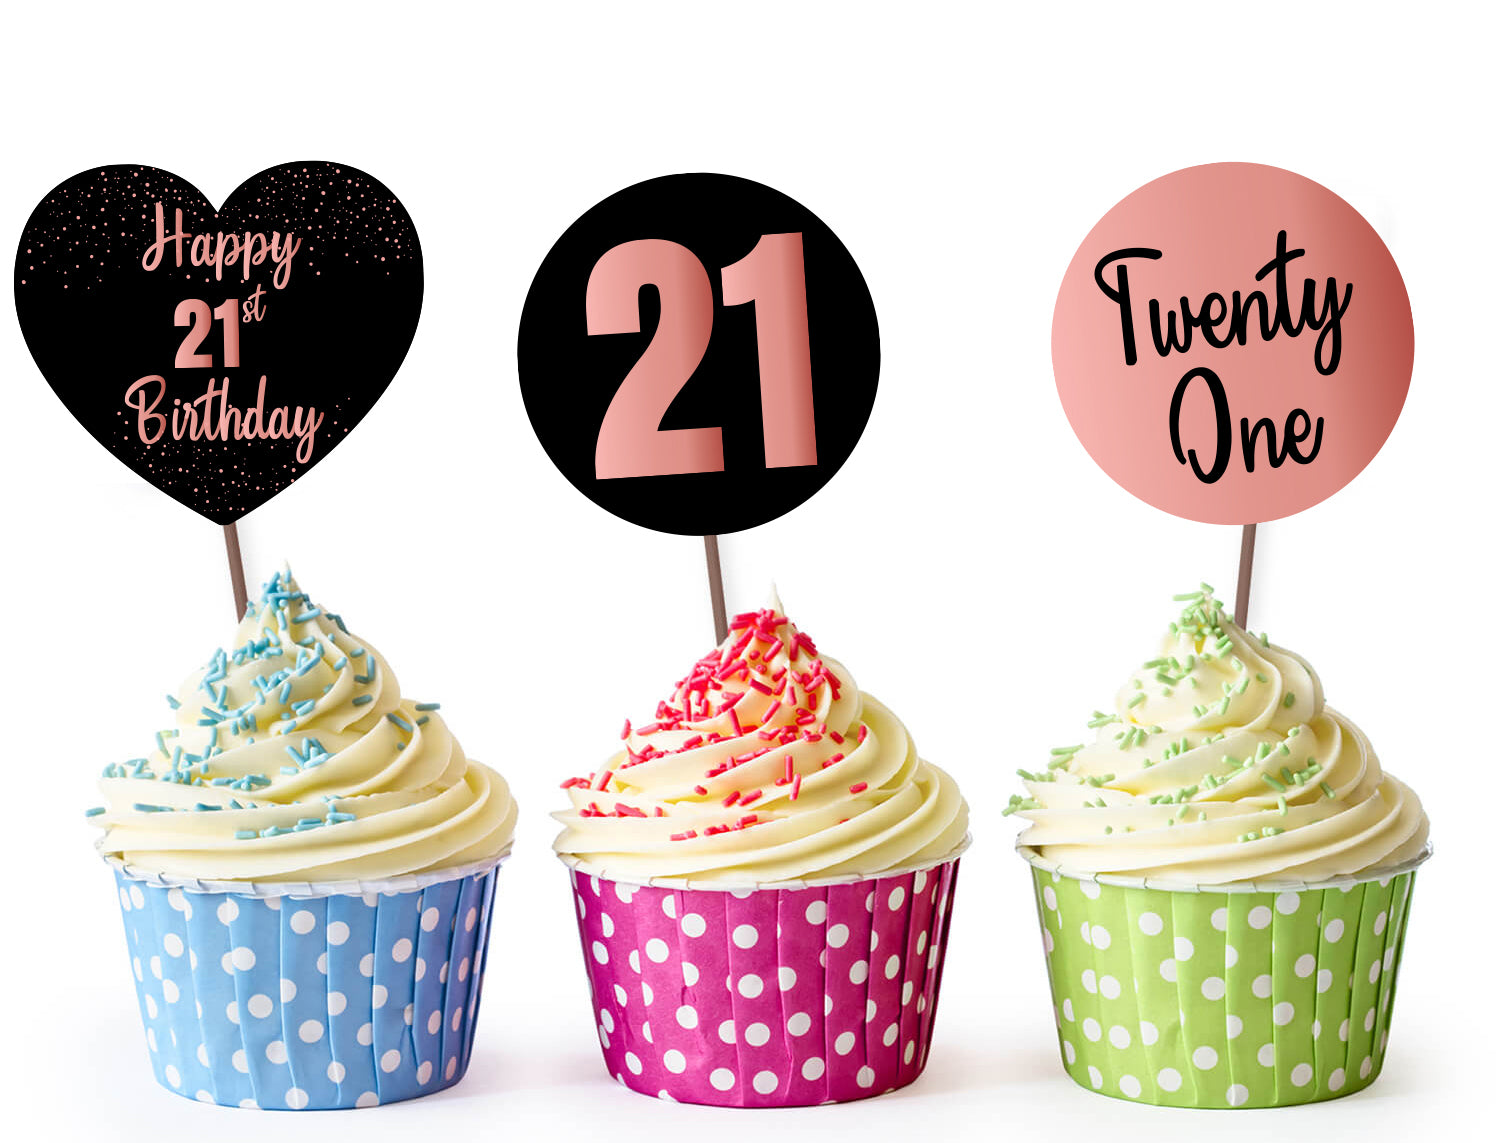 21 Cupcake Cake - CakeCentral.com